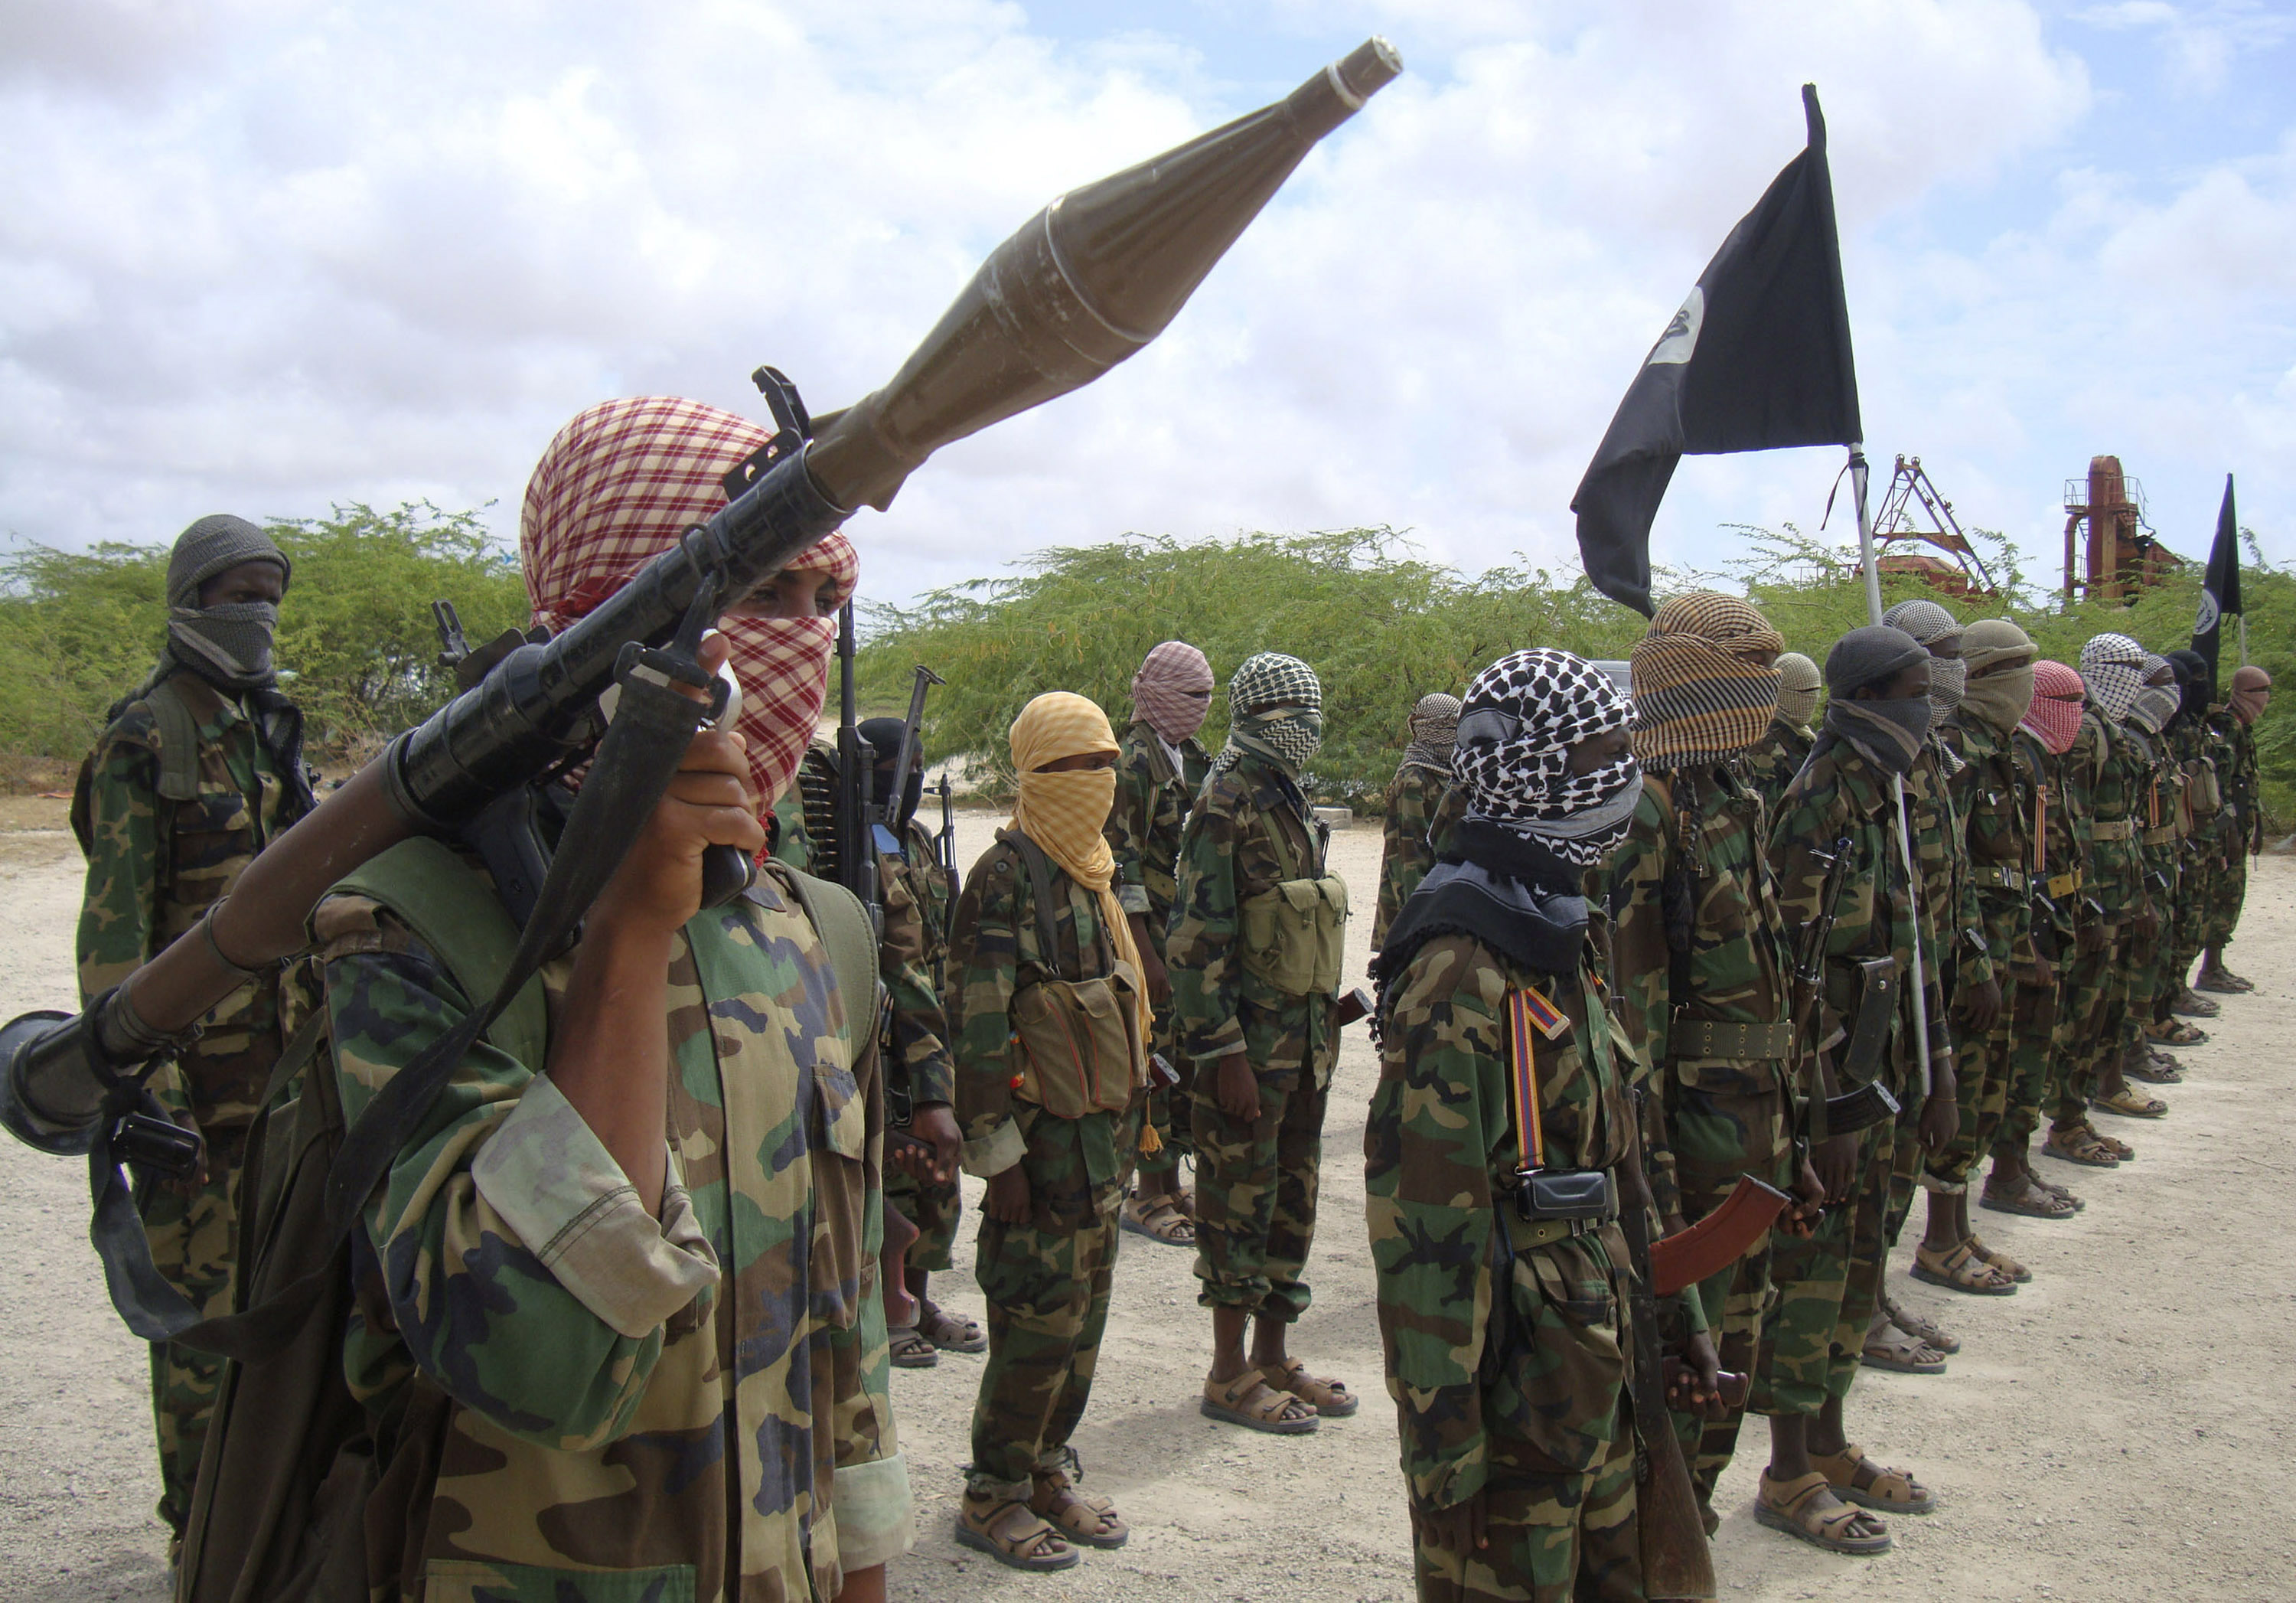 18-åringen misstänks tillhöra al-Shabaab. Den fruktade islamistmilisten som härjar i Somalia - och stora delar av övriga världen.